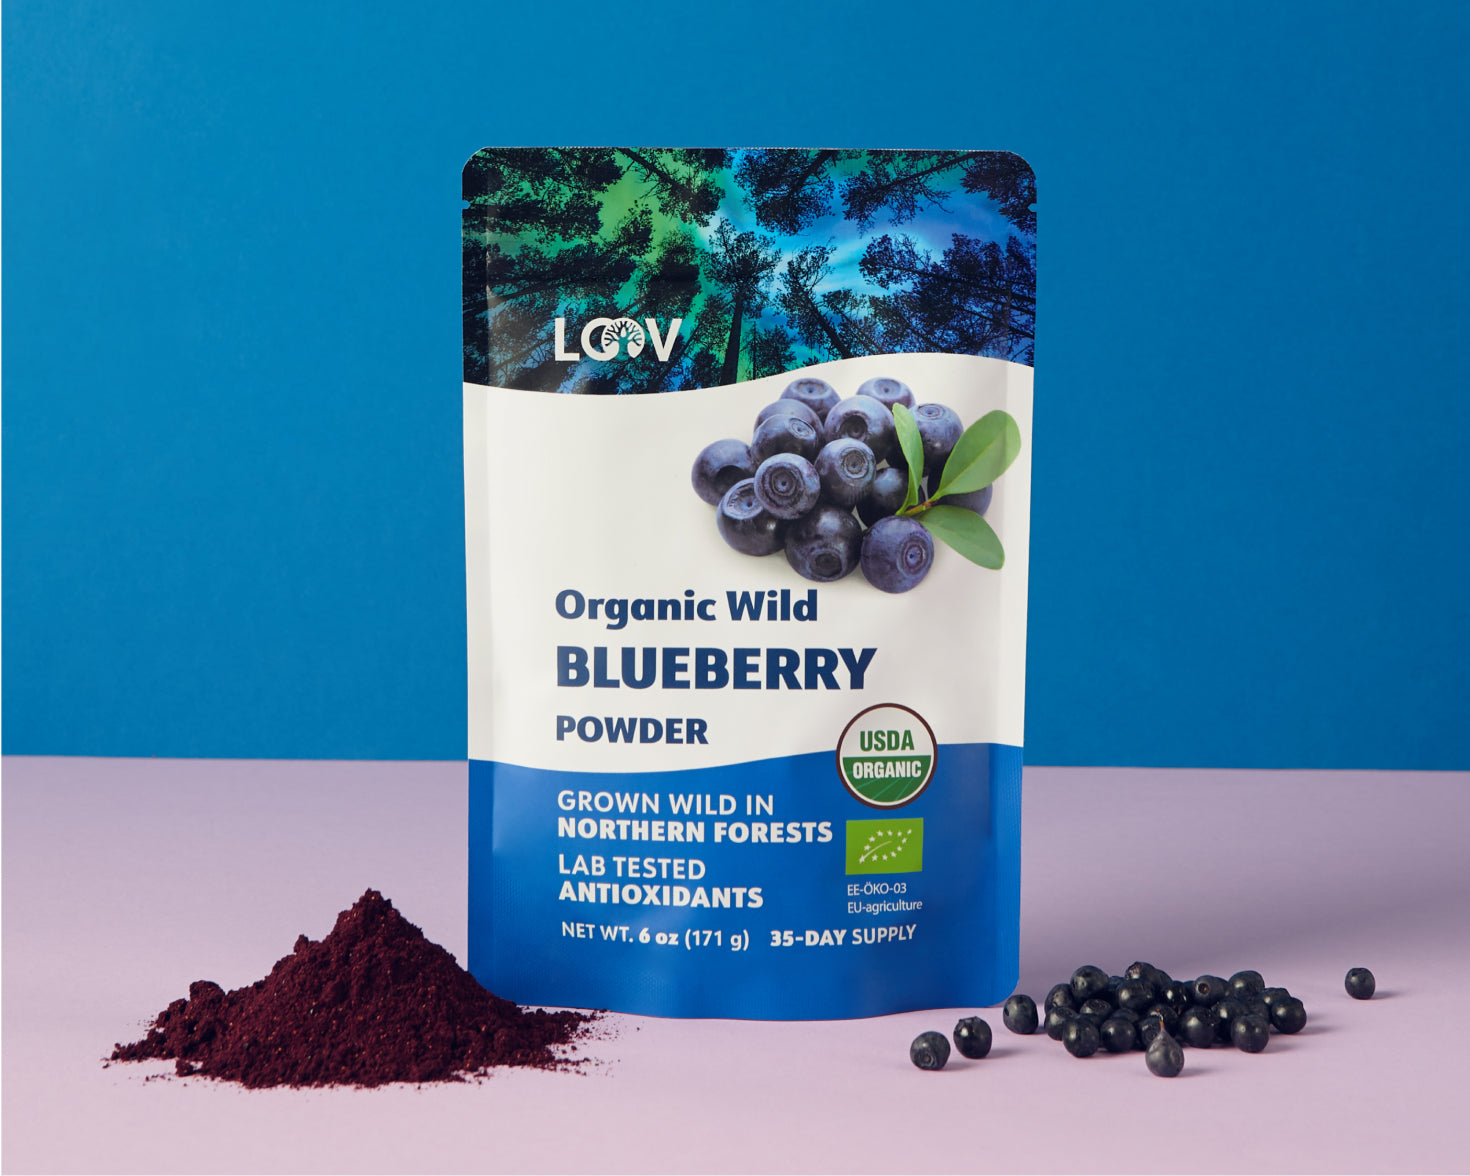 LOOV organic wild blueberry powder